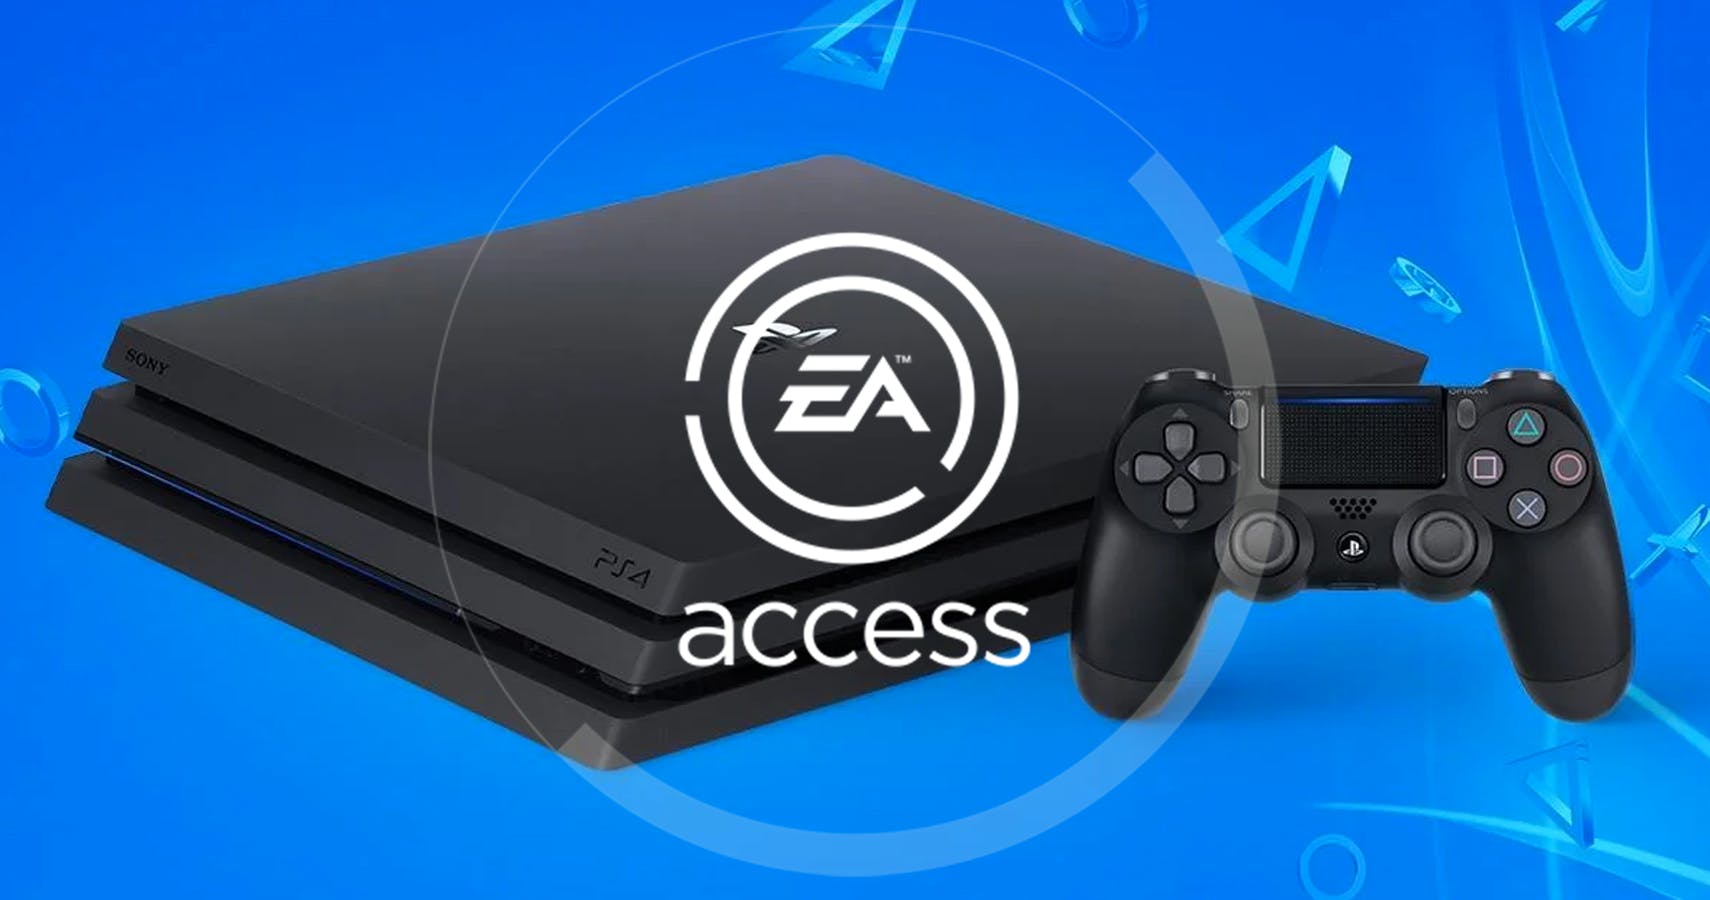 Oznámeno datum spuštění EA Access pro PS4